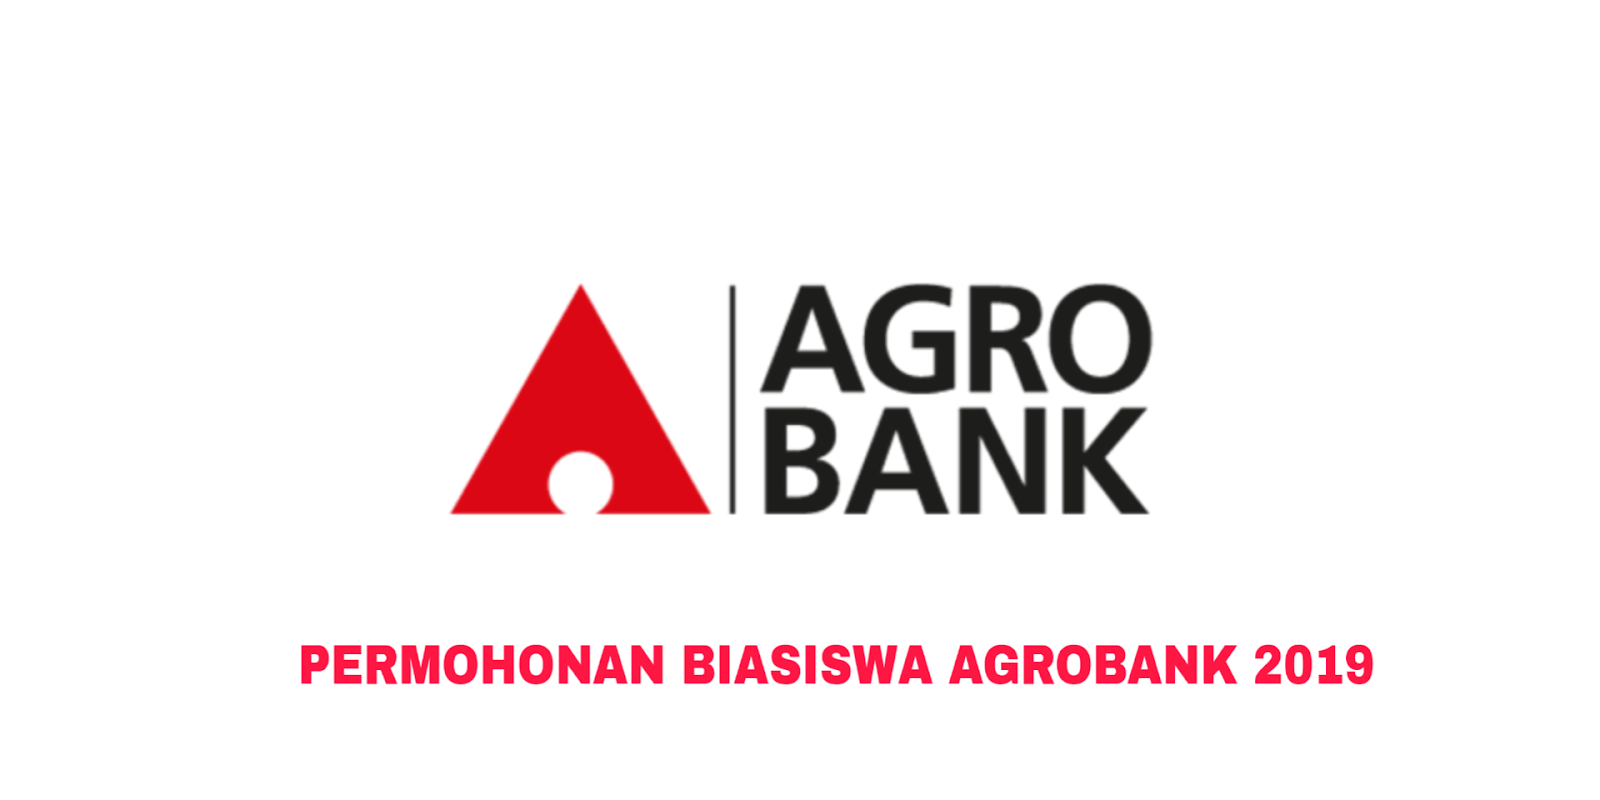 Permohonan Biasiswa Agrobank 2019 Online